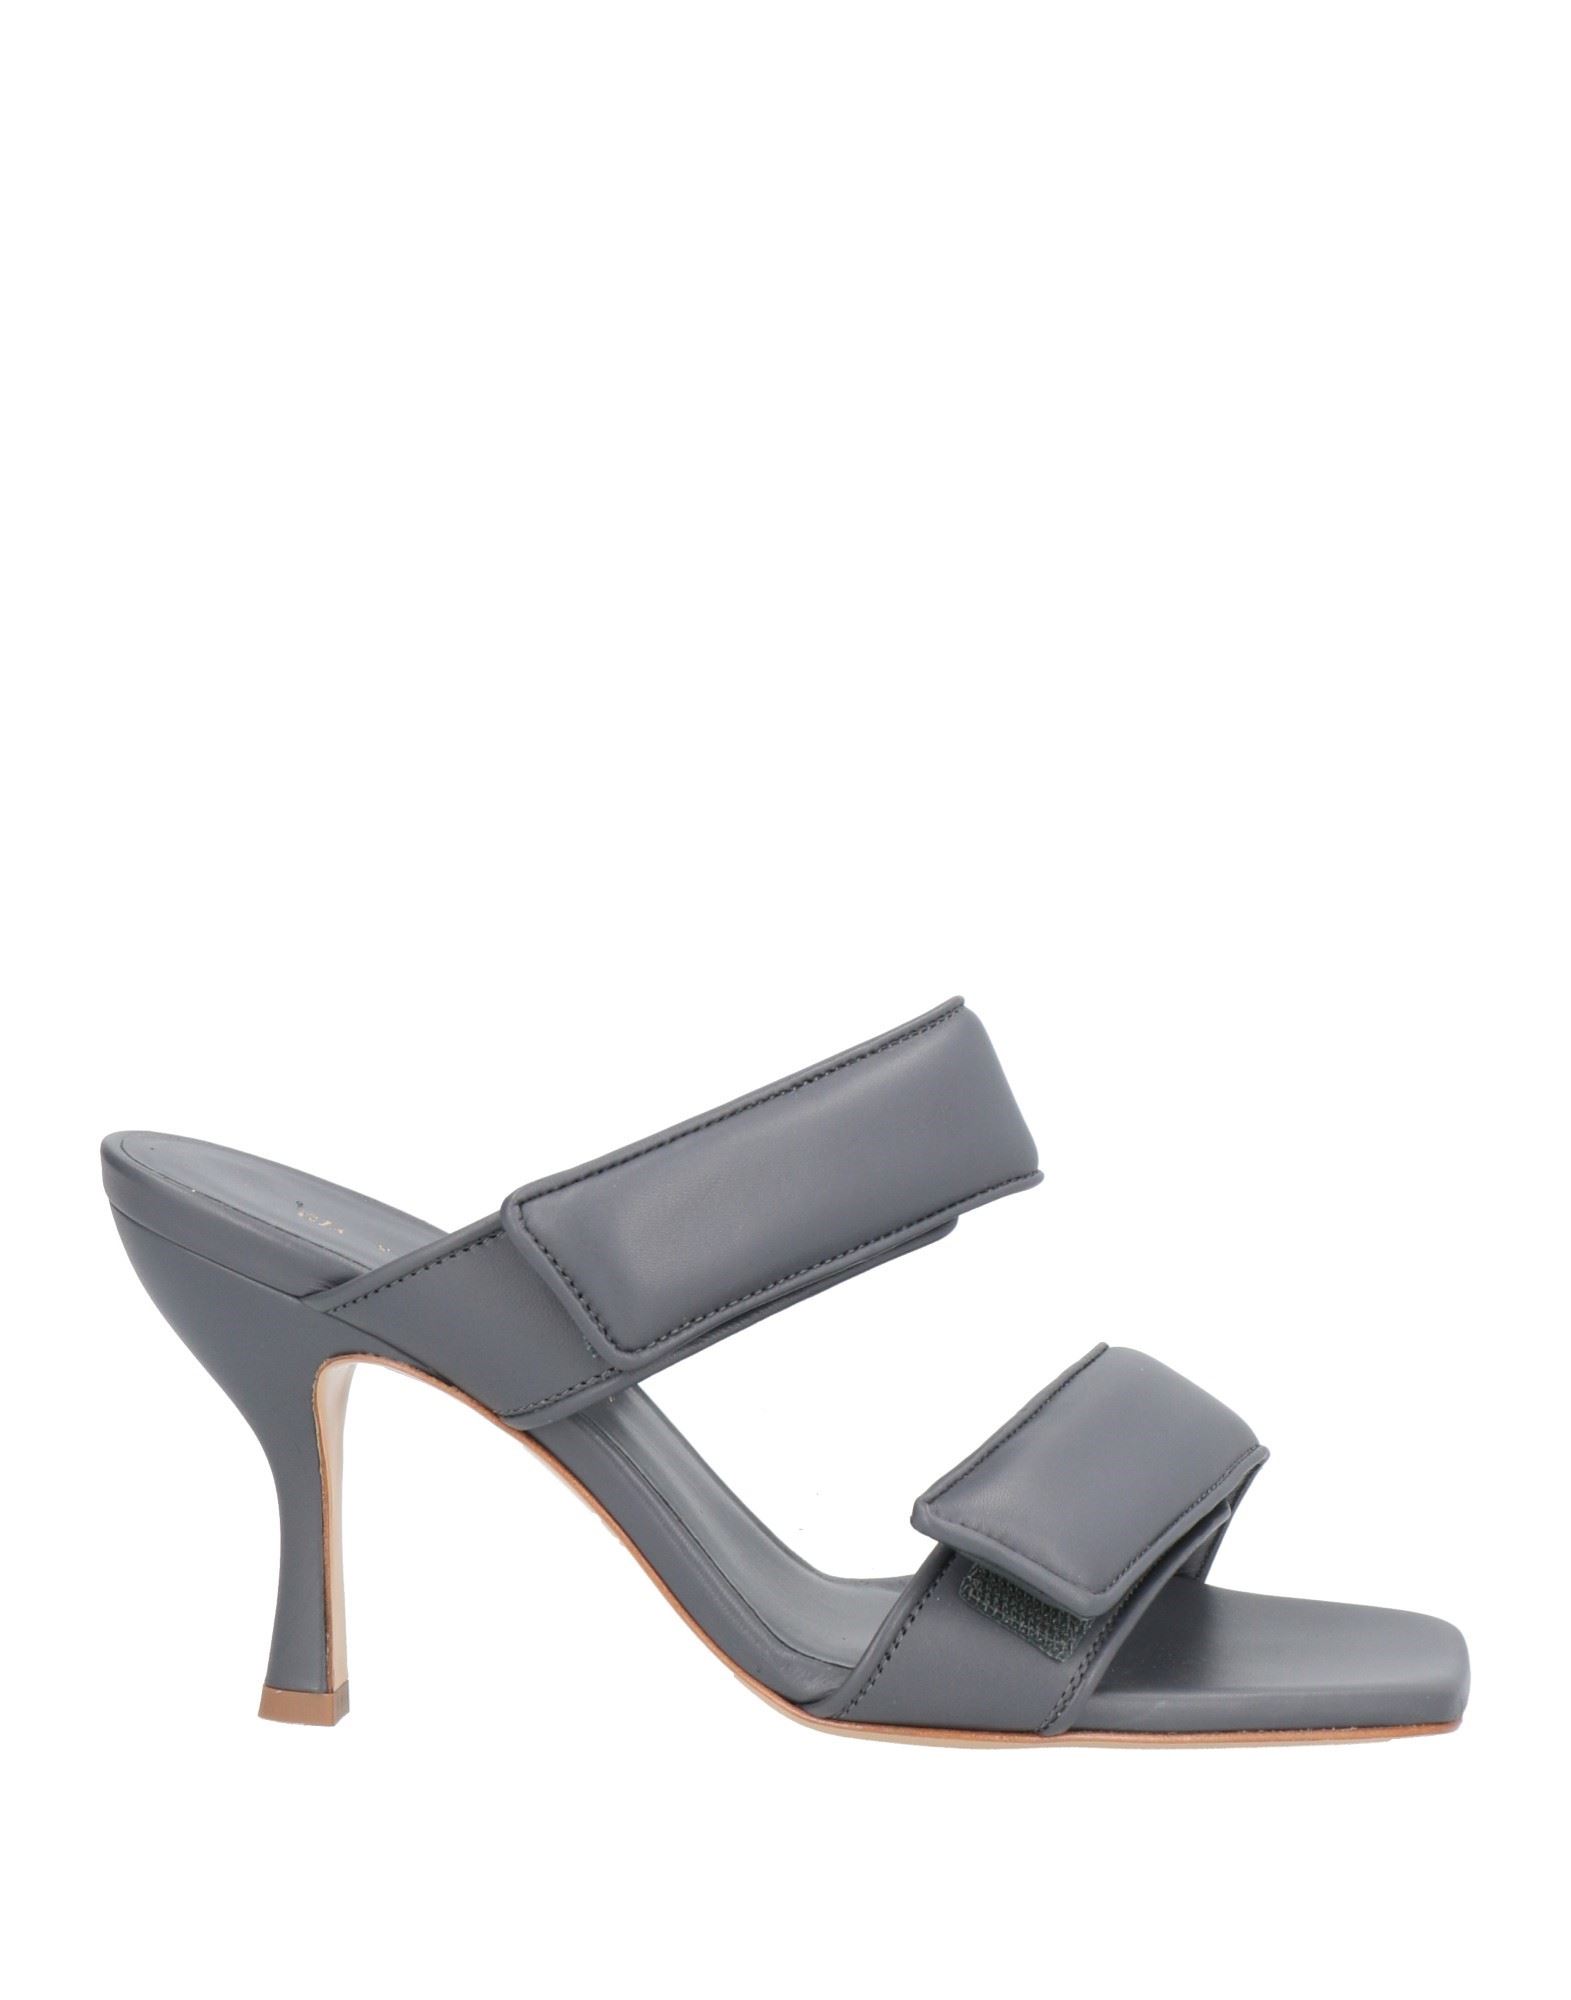 Gia X Pernille Teisbaek Sandals In Grey